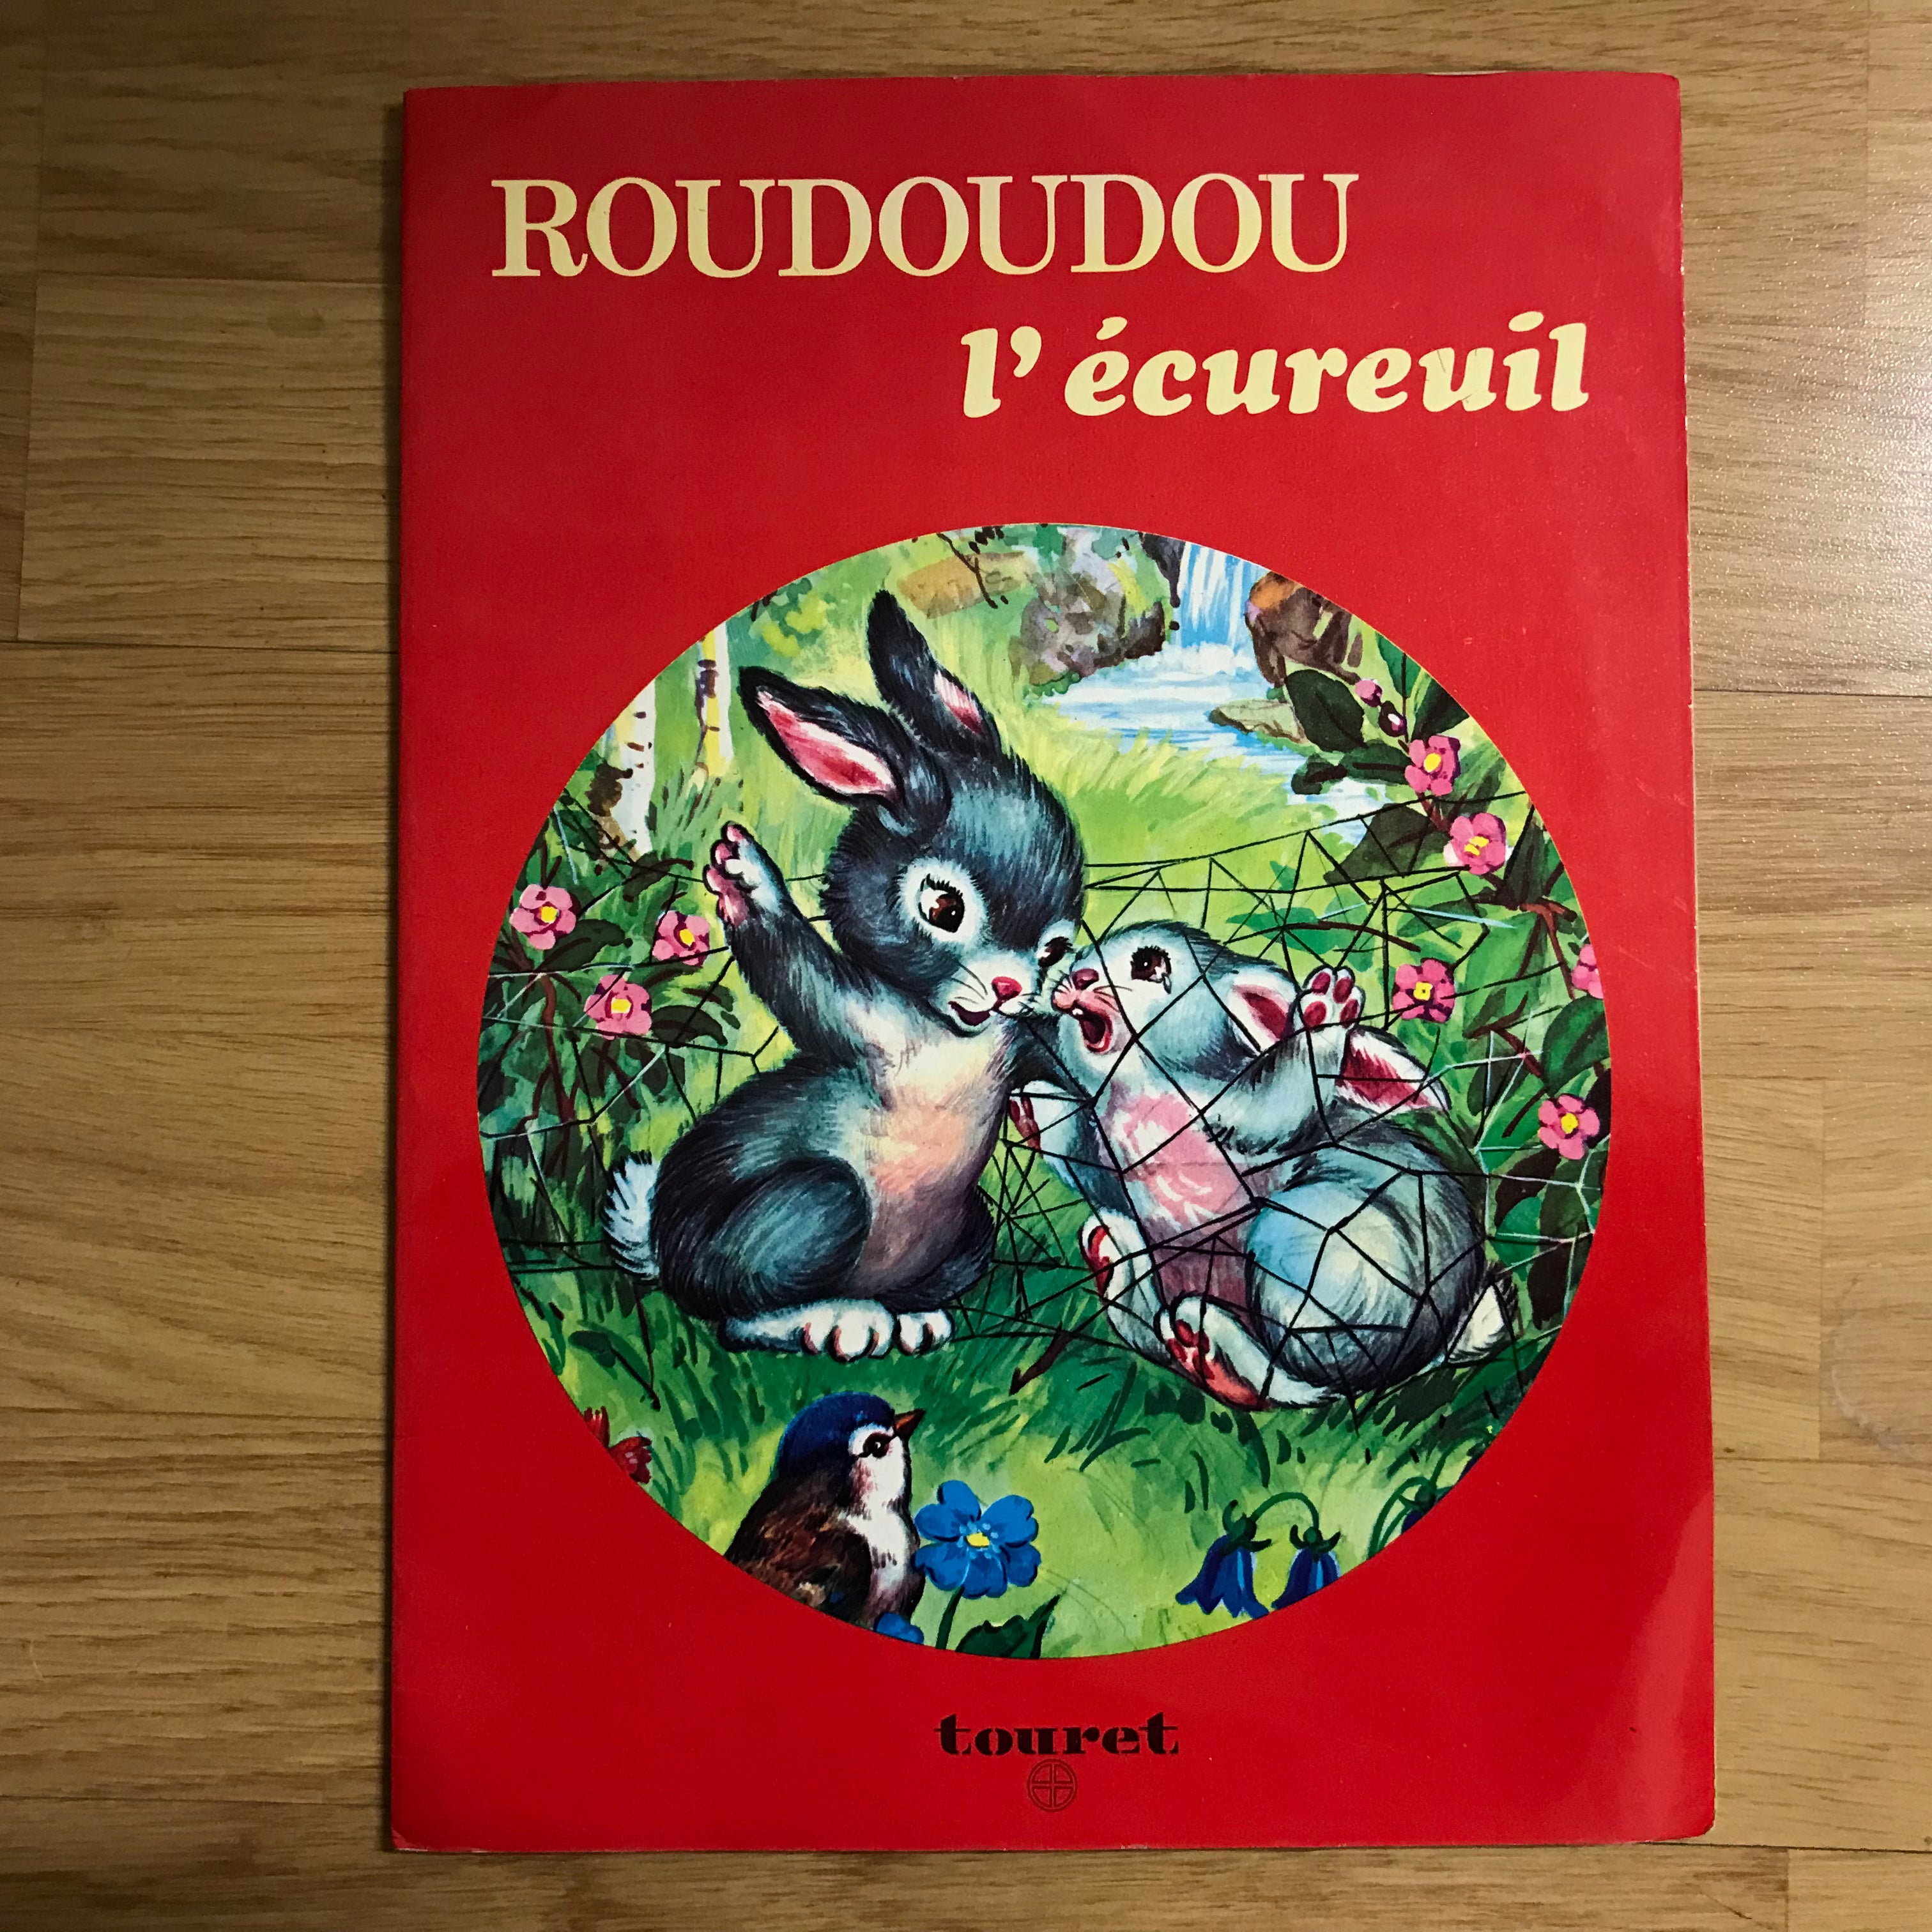 Roudoudou